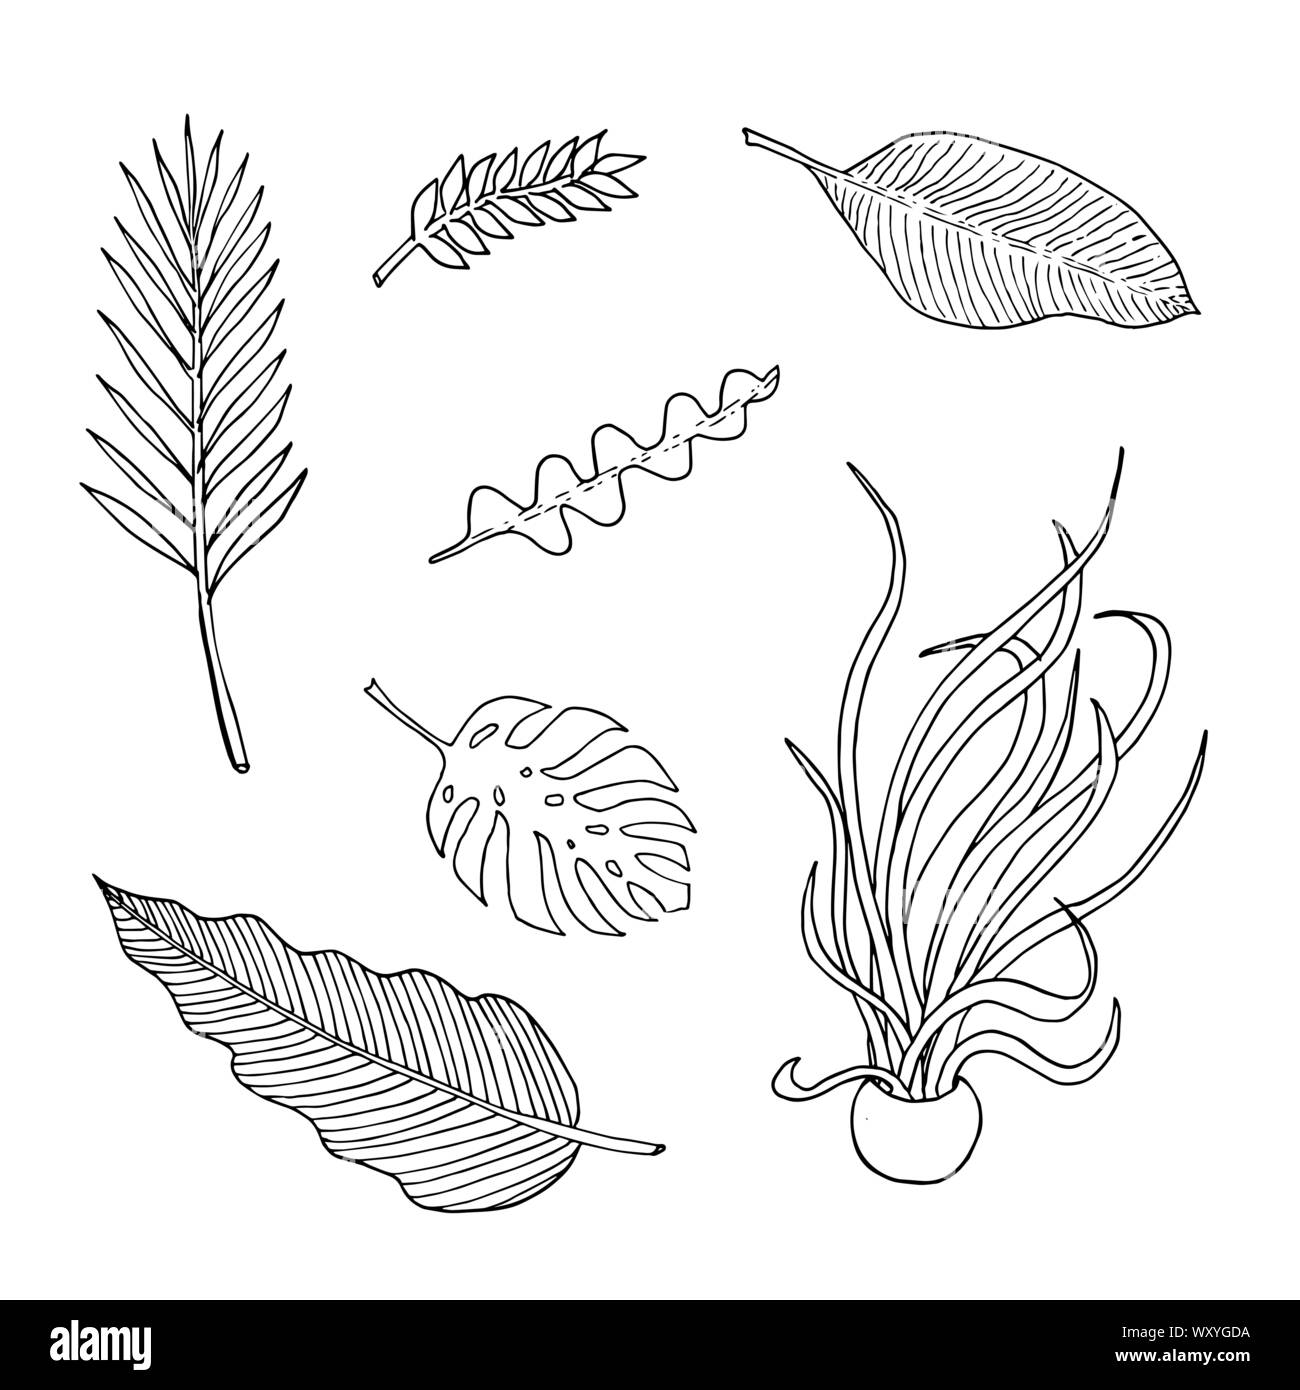 Set di di foglie: epiphyllum, Monstera, palm, zamioculca, medusa, banana e philodendron. Monocromatico doodle sketch, disegno a mano. Contorno nero su sfondo bianco. Illustrazione Vettoriale Illustrazione Vettoriale